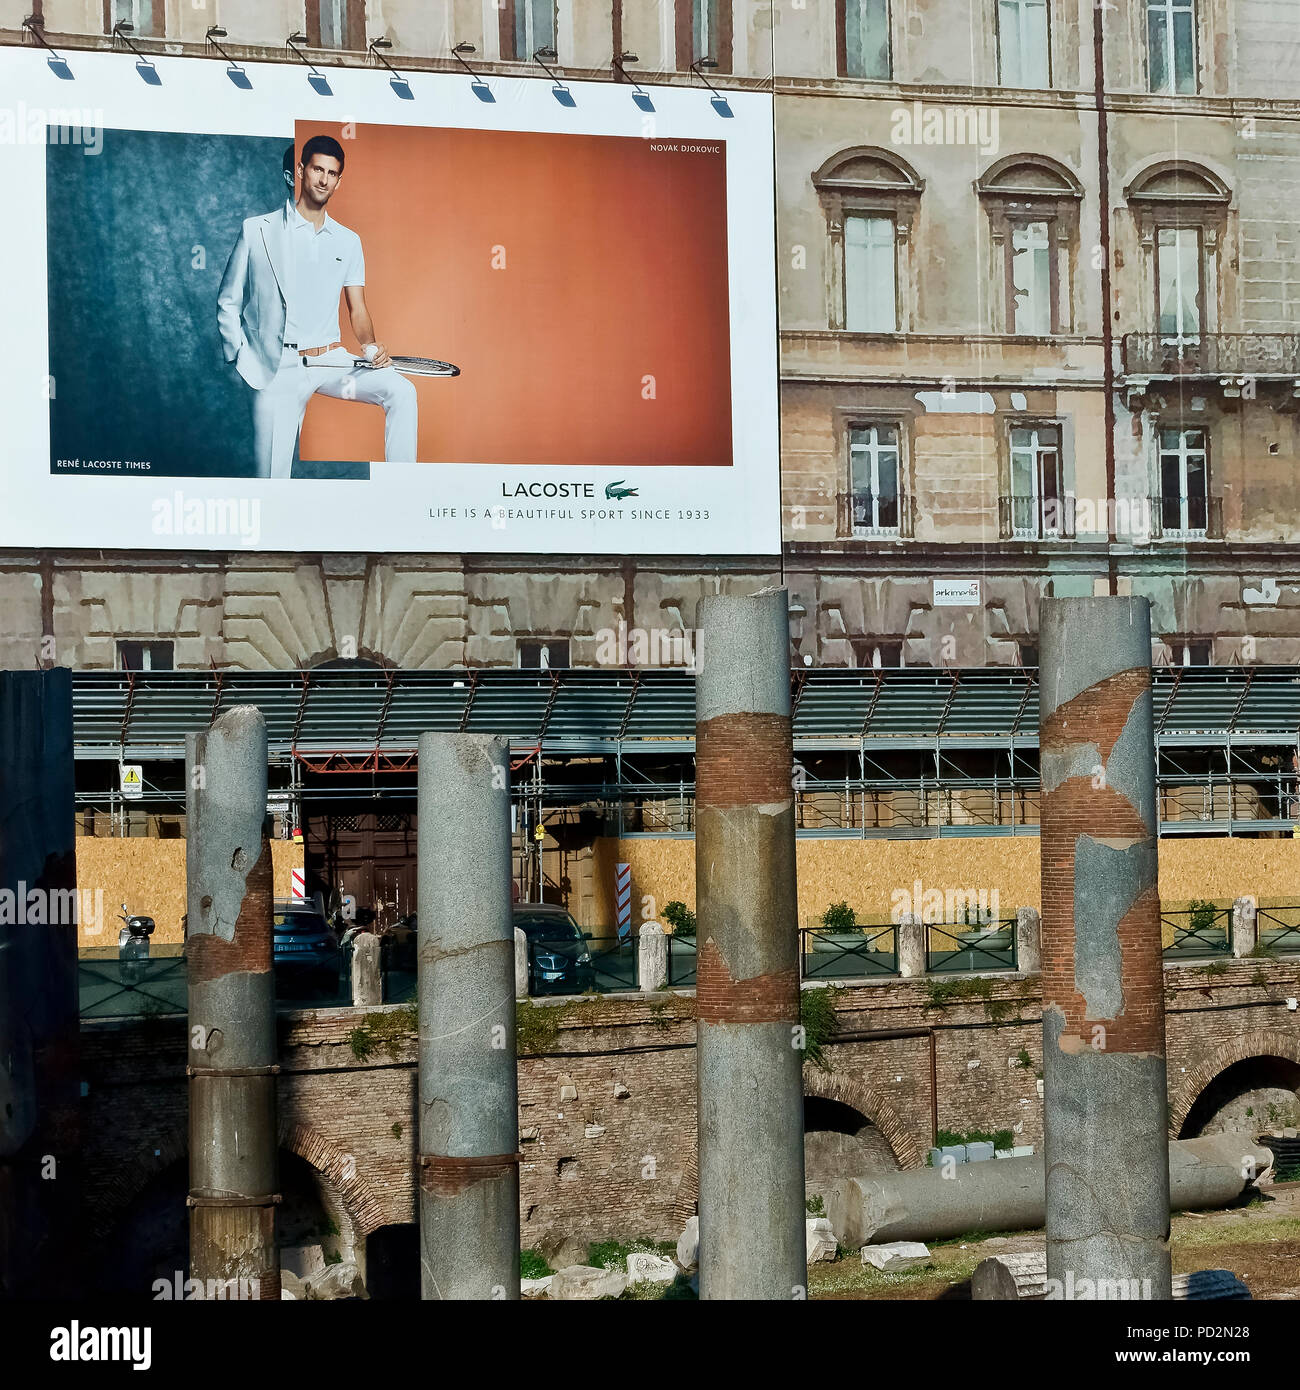 Lacoste cartellone pubblicitario su un edificio ponteggio durante i lavori di restauro, presso i Mercati di Traiano Forum. Roma, Italia. Il nuovo e il vecchio concetto di contrasto. Foto Stock